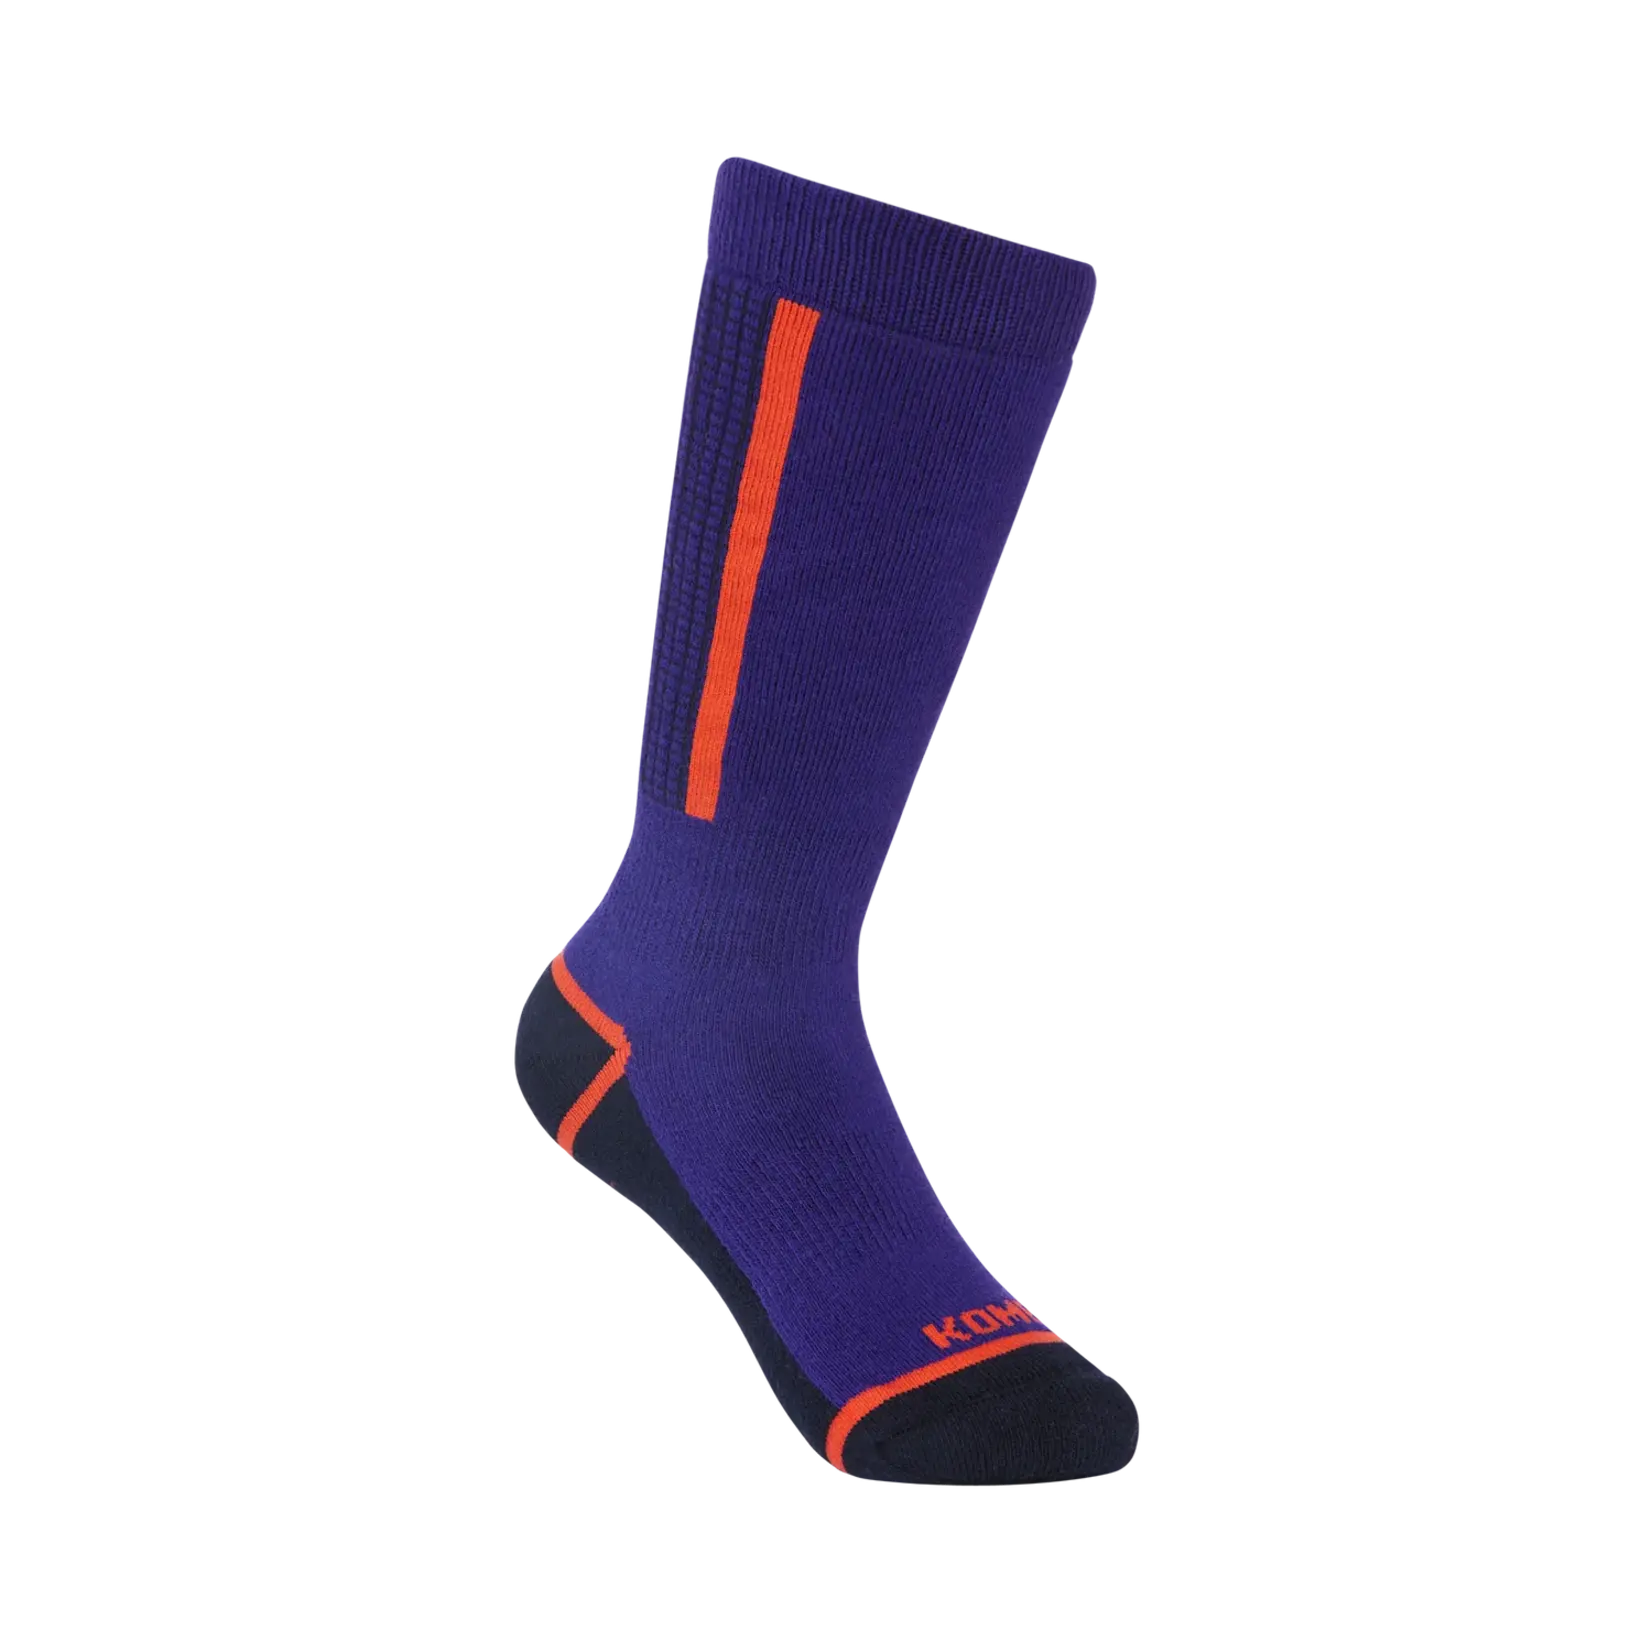 Kombi Paragon Childrens Socks, violet indigo